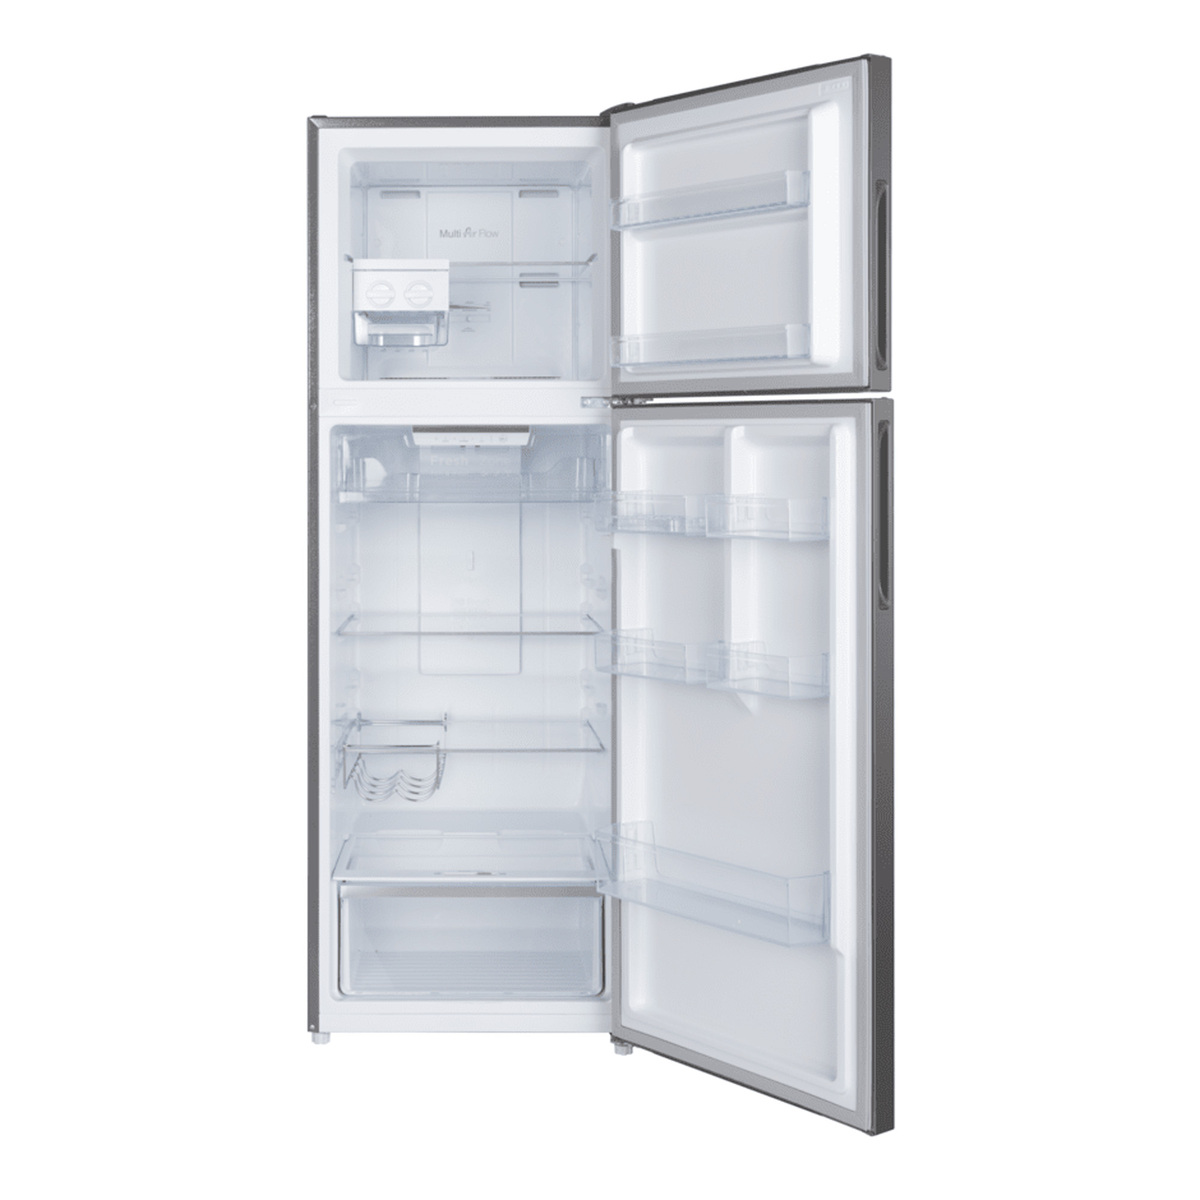 Hoover Double Door Refrigerator, 425 L, Inox, HTR-M425-S